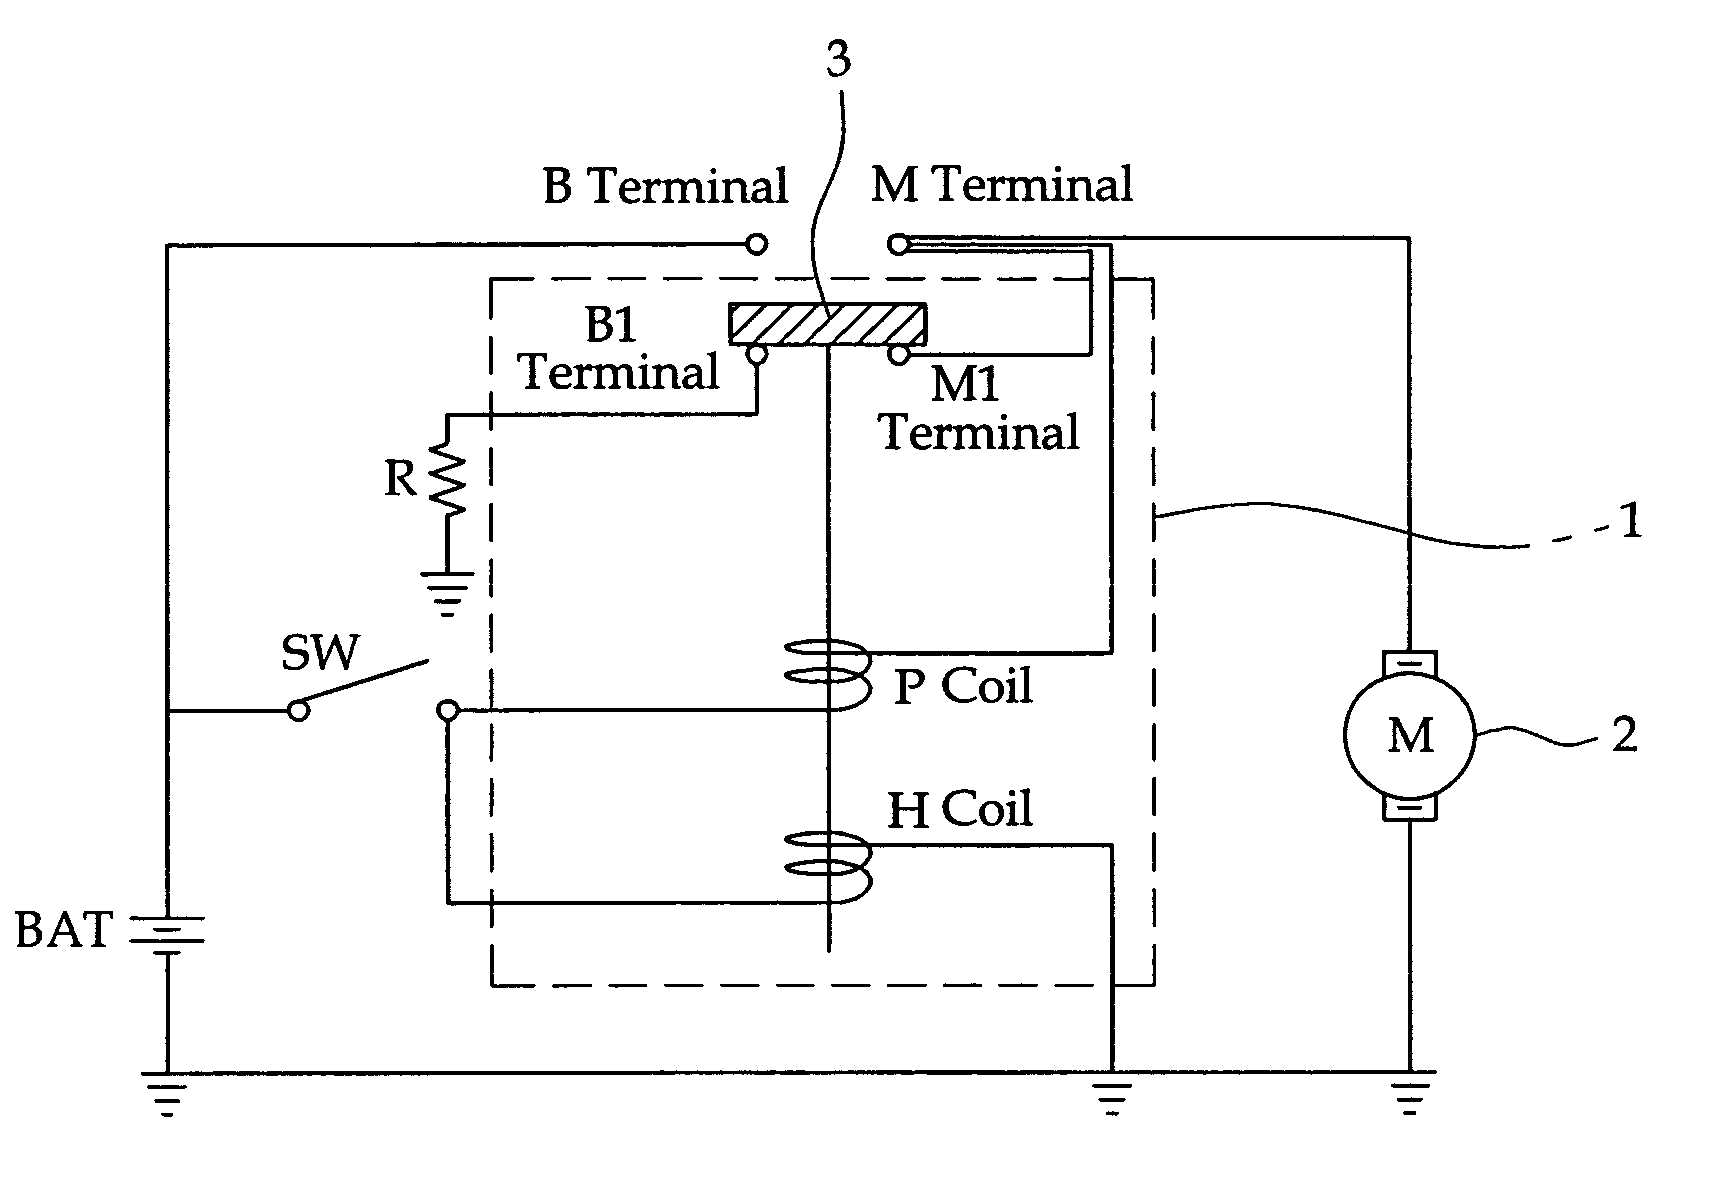 Stopping noise reduction circuit for start motor using resistor